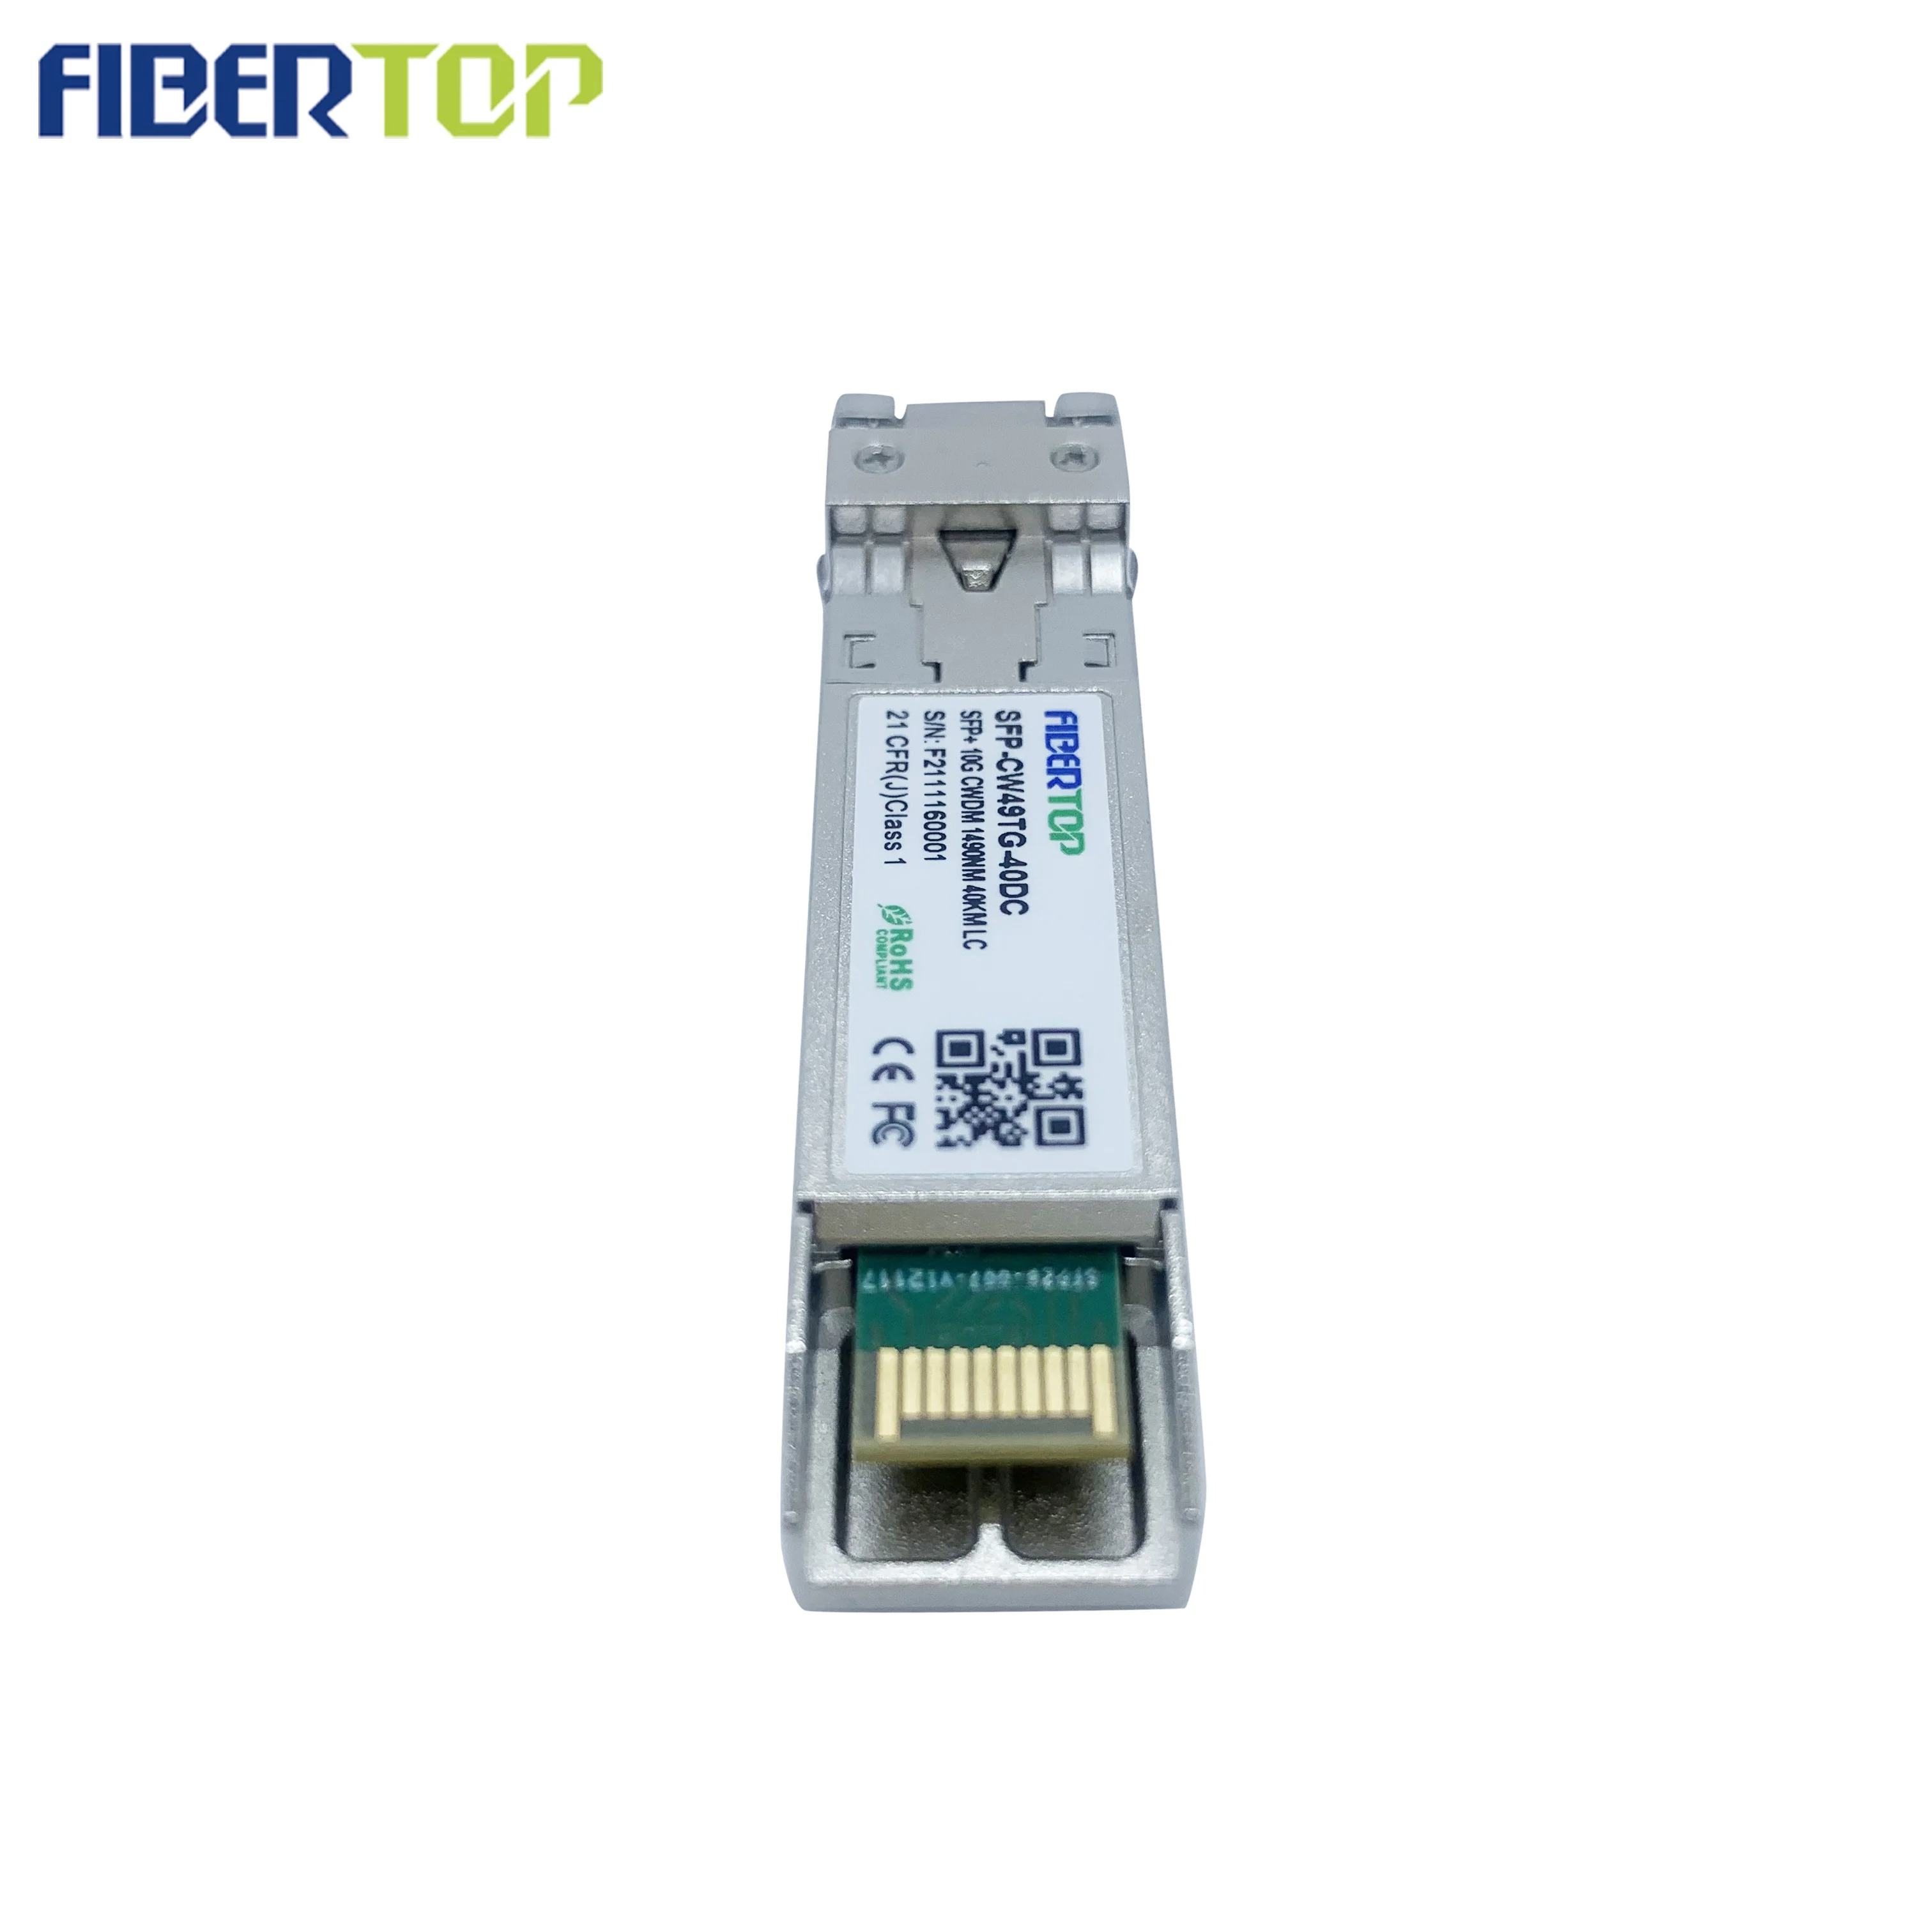 FİBERTOP 10g cwdm sfp + optik modül en iyi fiber optik internet doğrudan bağlantılı alıcı-verici Görüntü 1